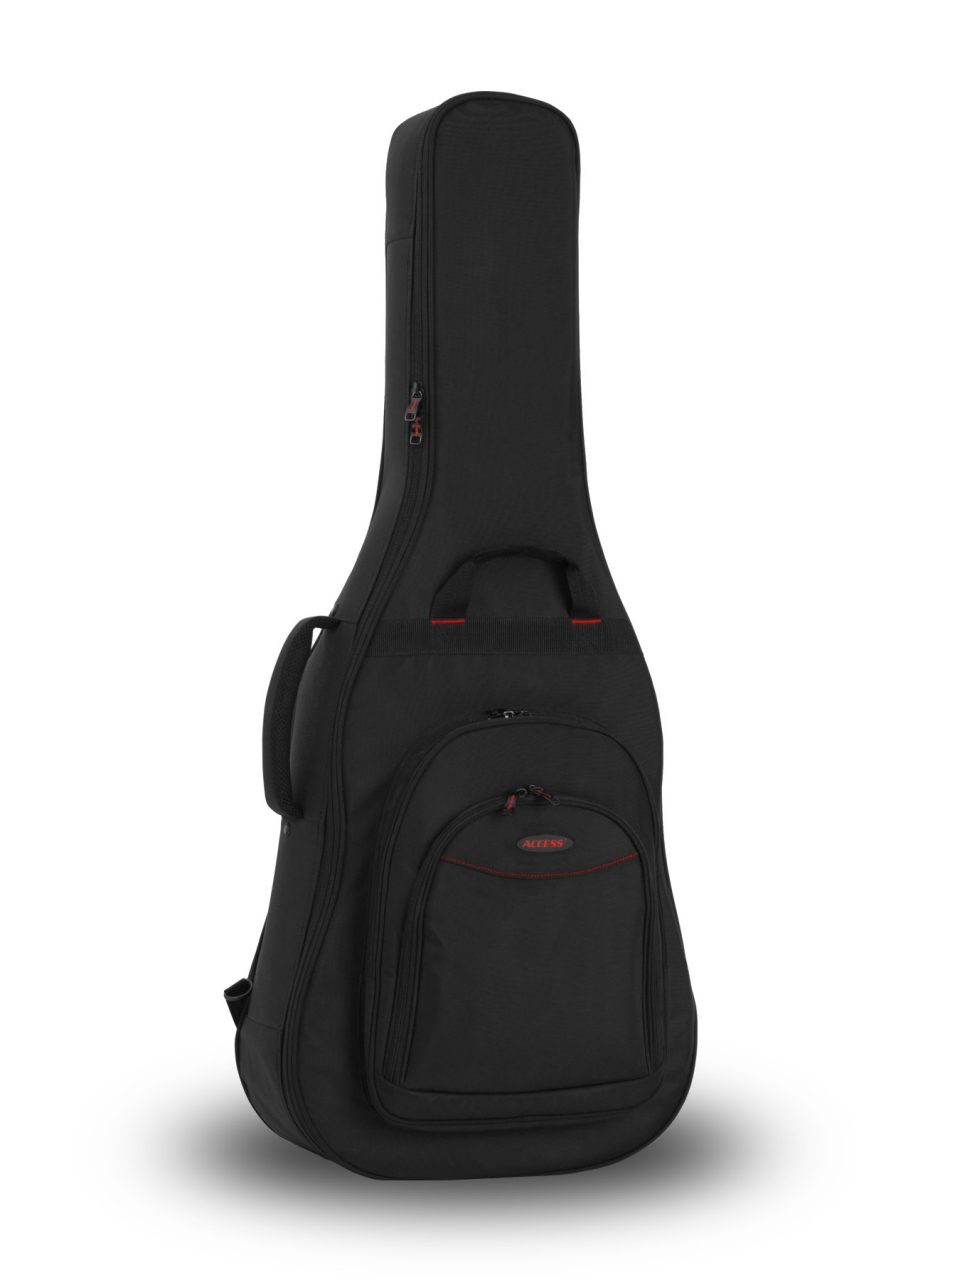 11858円 購入 Gator GT-ACOUSTIC 新品 アコースティックギター用ギグバッグ ゲーター Gig Bag Case Black Tan Gray ブラック タン ベージュ グレー 黒 ドレッドノート Acoustic Guitar